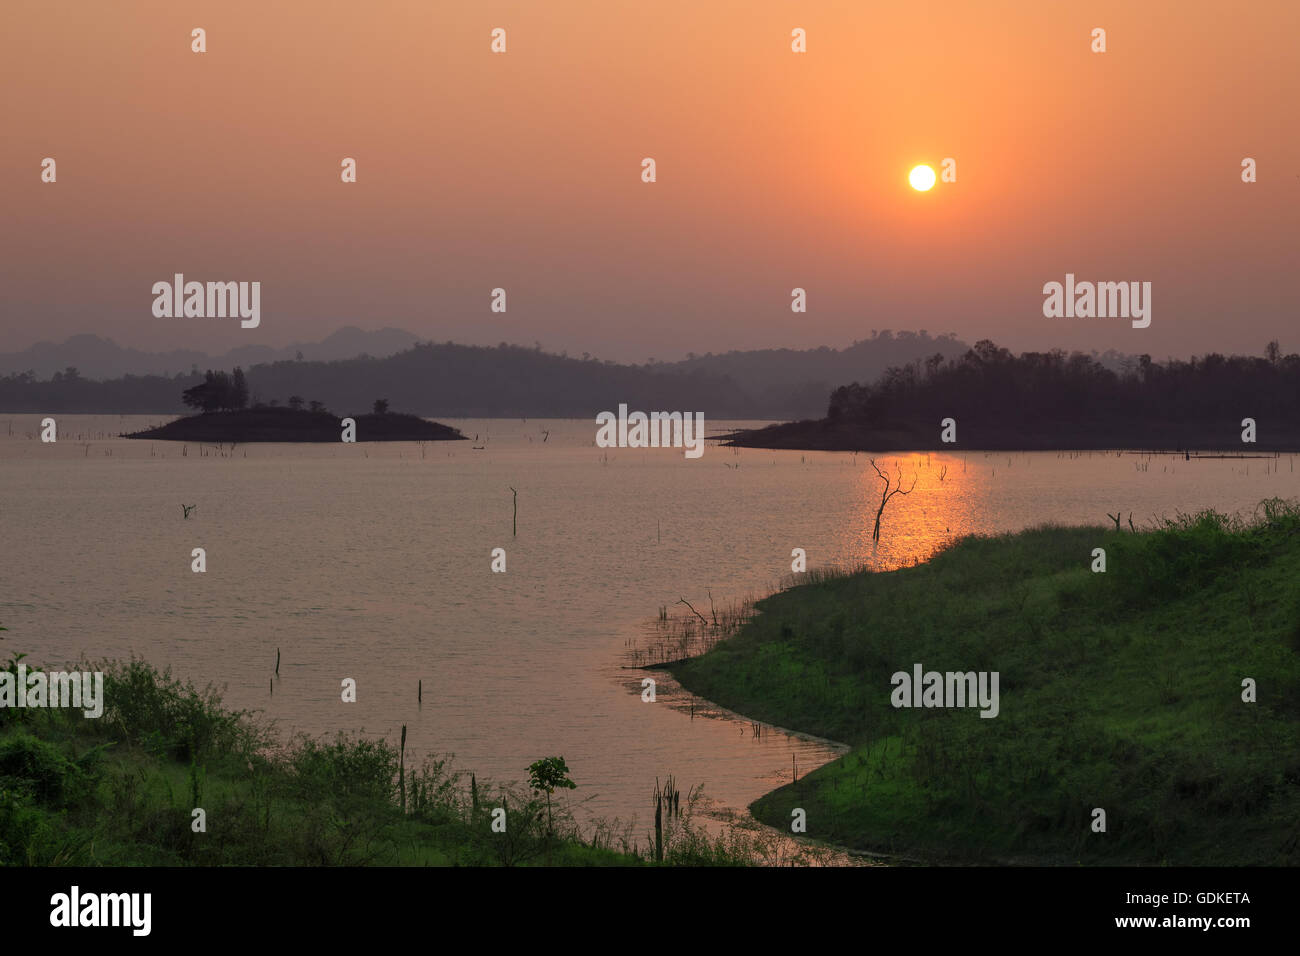 Sonnenuntergang am See mit einem wunderschönen orange Licht. Pompey, Kanchanaburi, Thailand. Stockfoto